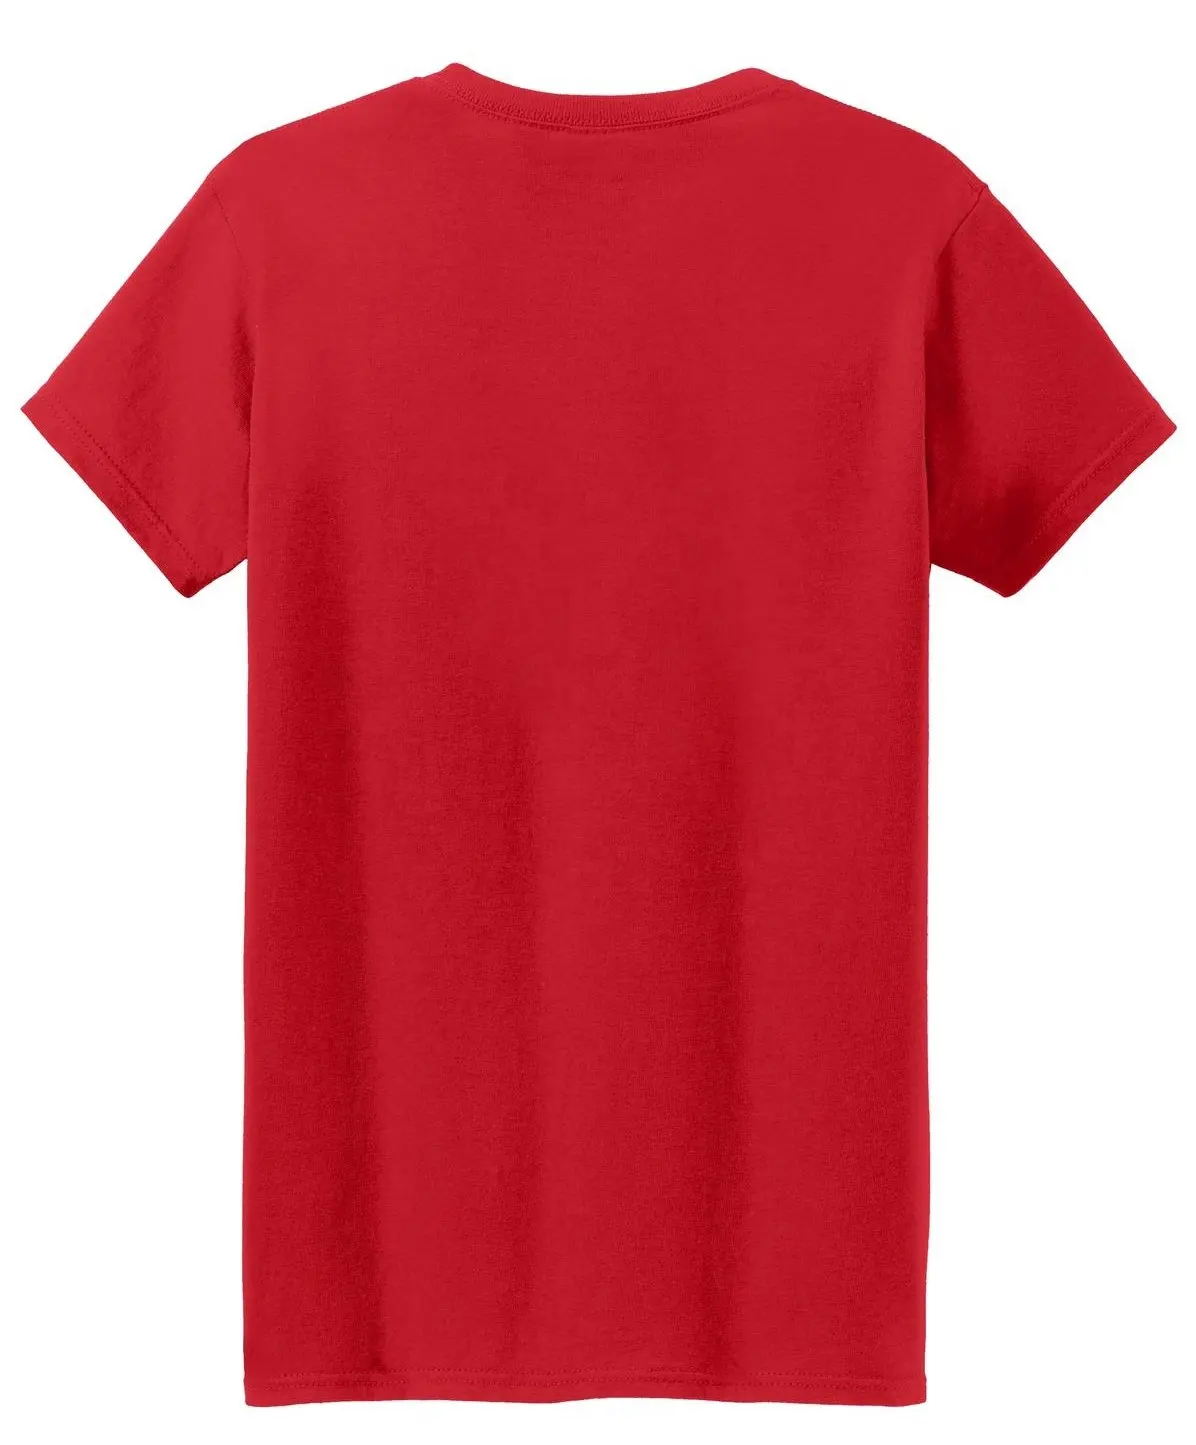 Großhandel schlichte Mode tragen 100% Baumwolle T-Shirts für Männer Frauen Rundhals ausschnitt Kurzarm plus Größe T-Shirts in roter Farbe